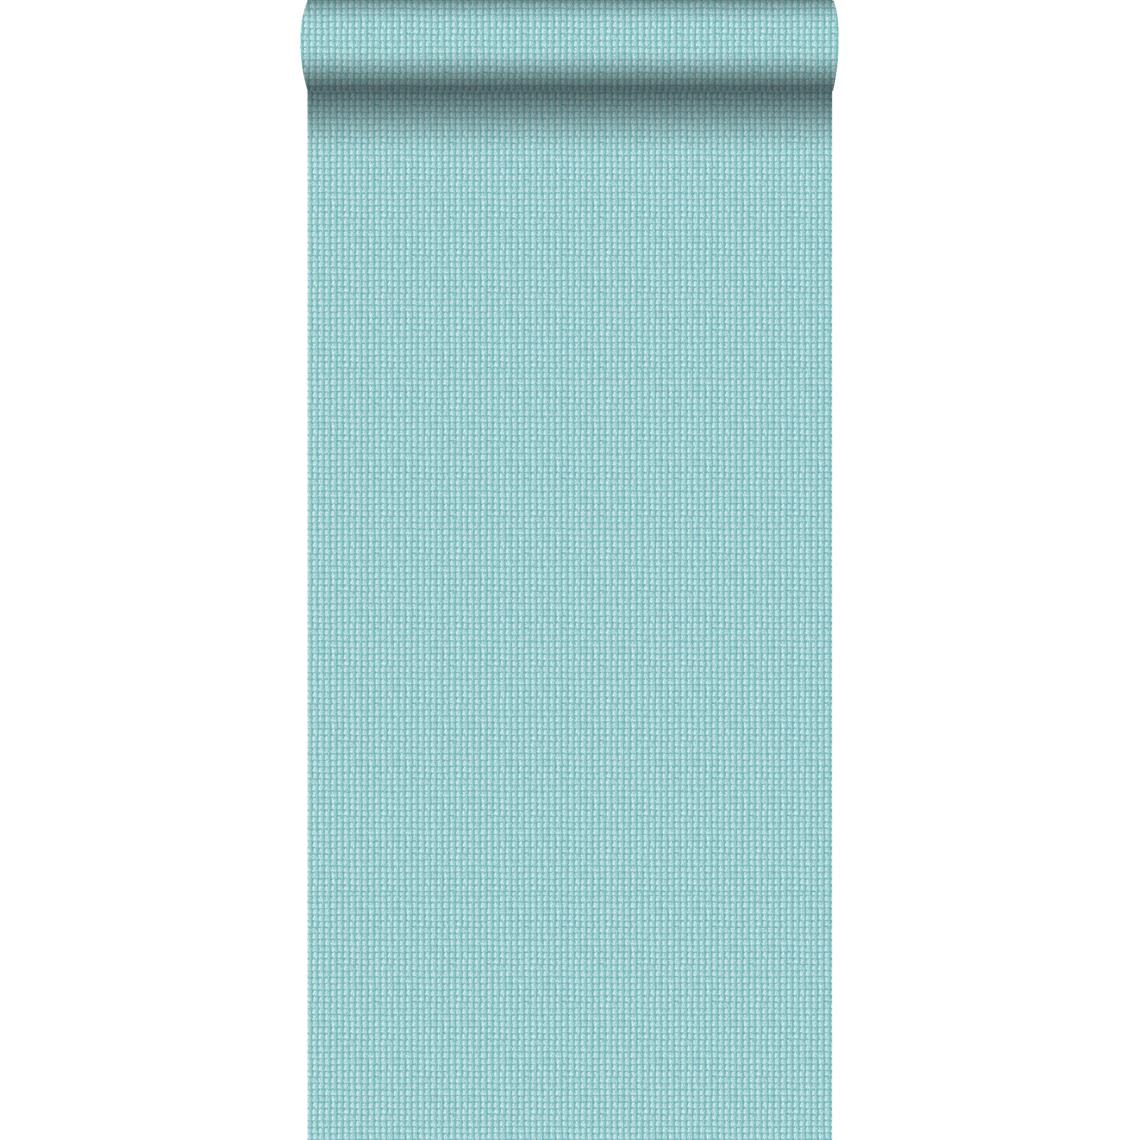 ESTAhome - ESTAhome papier peint imitation broderie turquoise - 138131 - 53 cm x 10,05 m - Papier peint